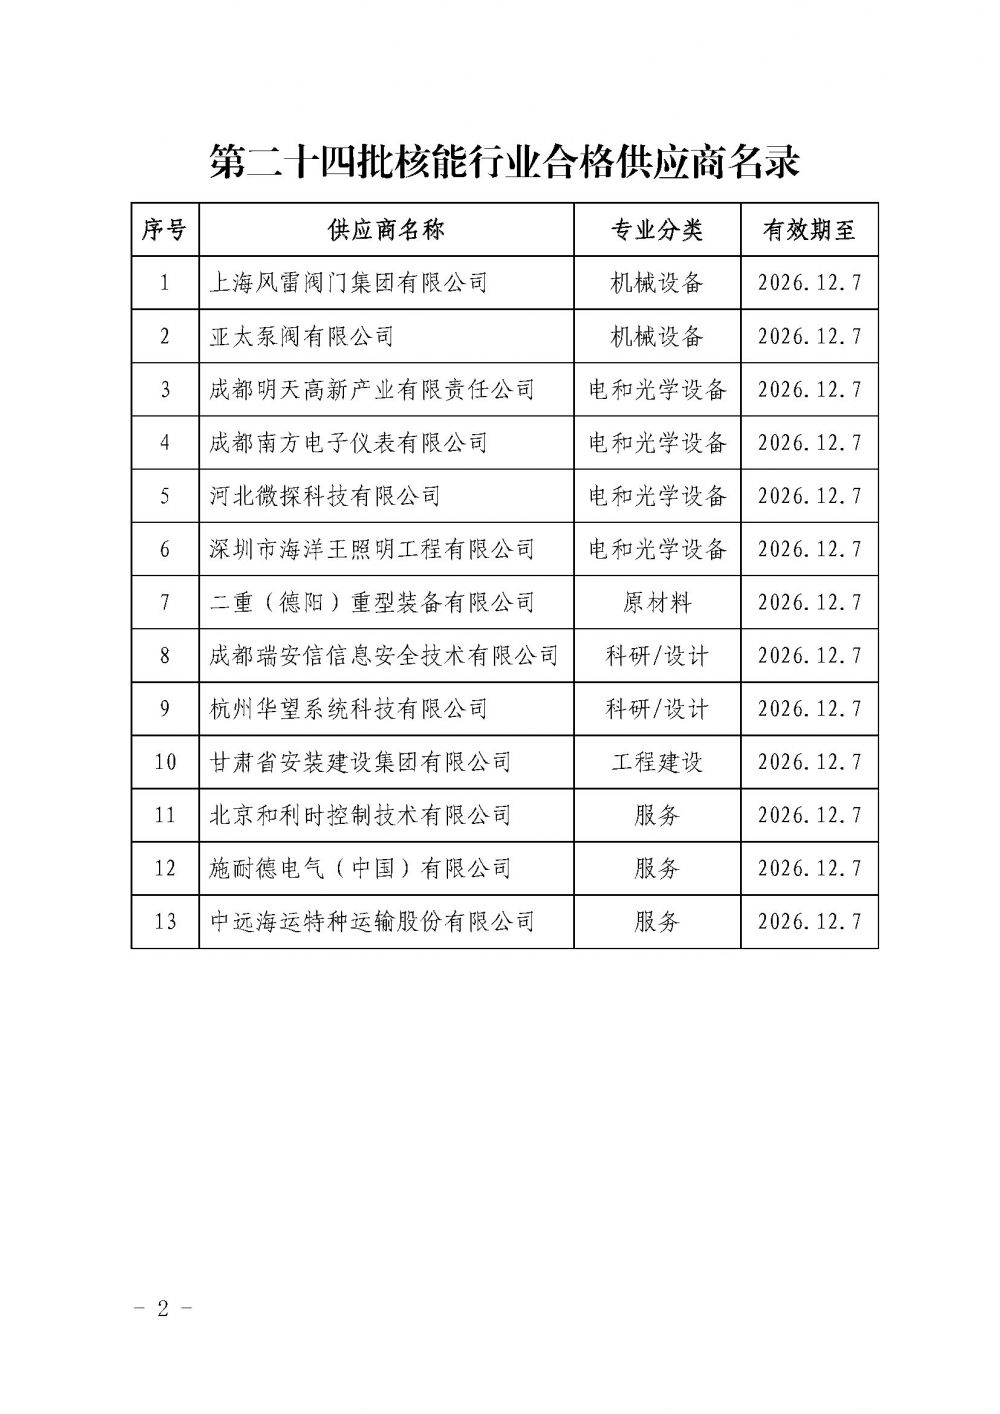 中国核能行业协会关于发布第二十四批核能行业合格供应商名录的公告_页面_2.jpg